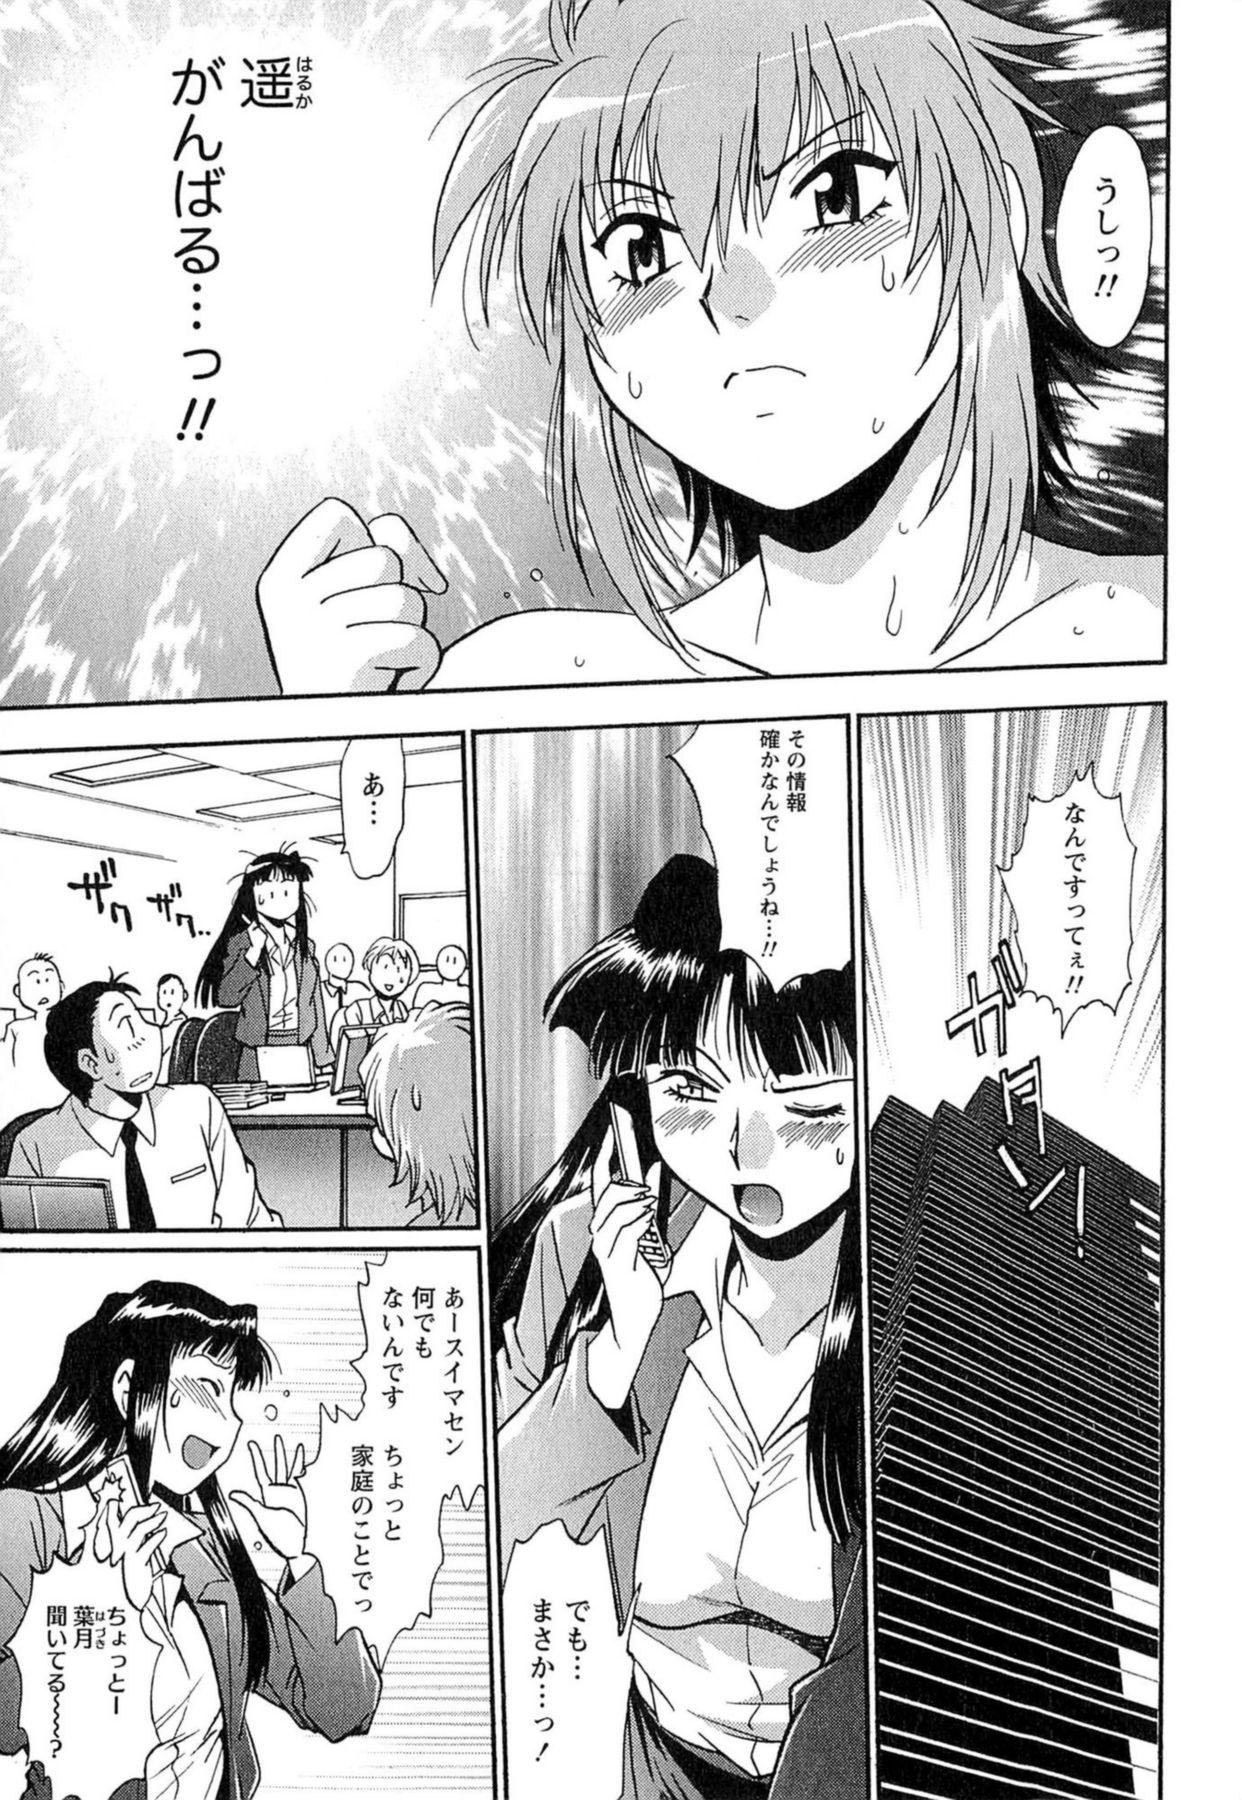 Seduction Kuikomi wo Naoshiteru Hima wa Nai! Vol. 1 Fantasy Massage - Page 8